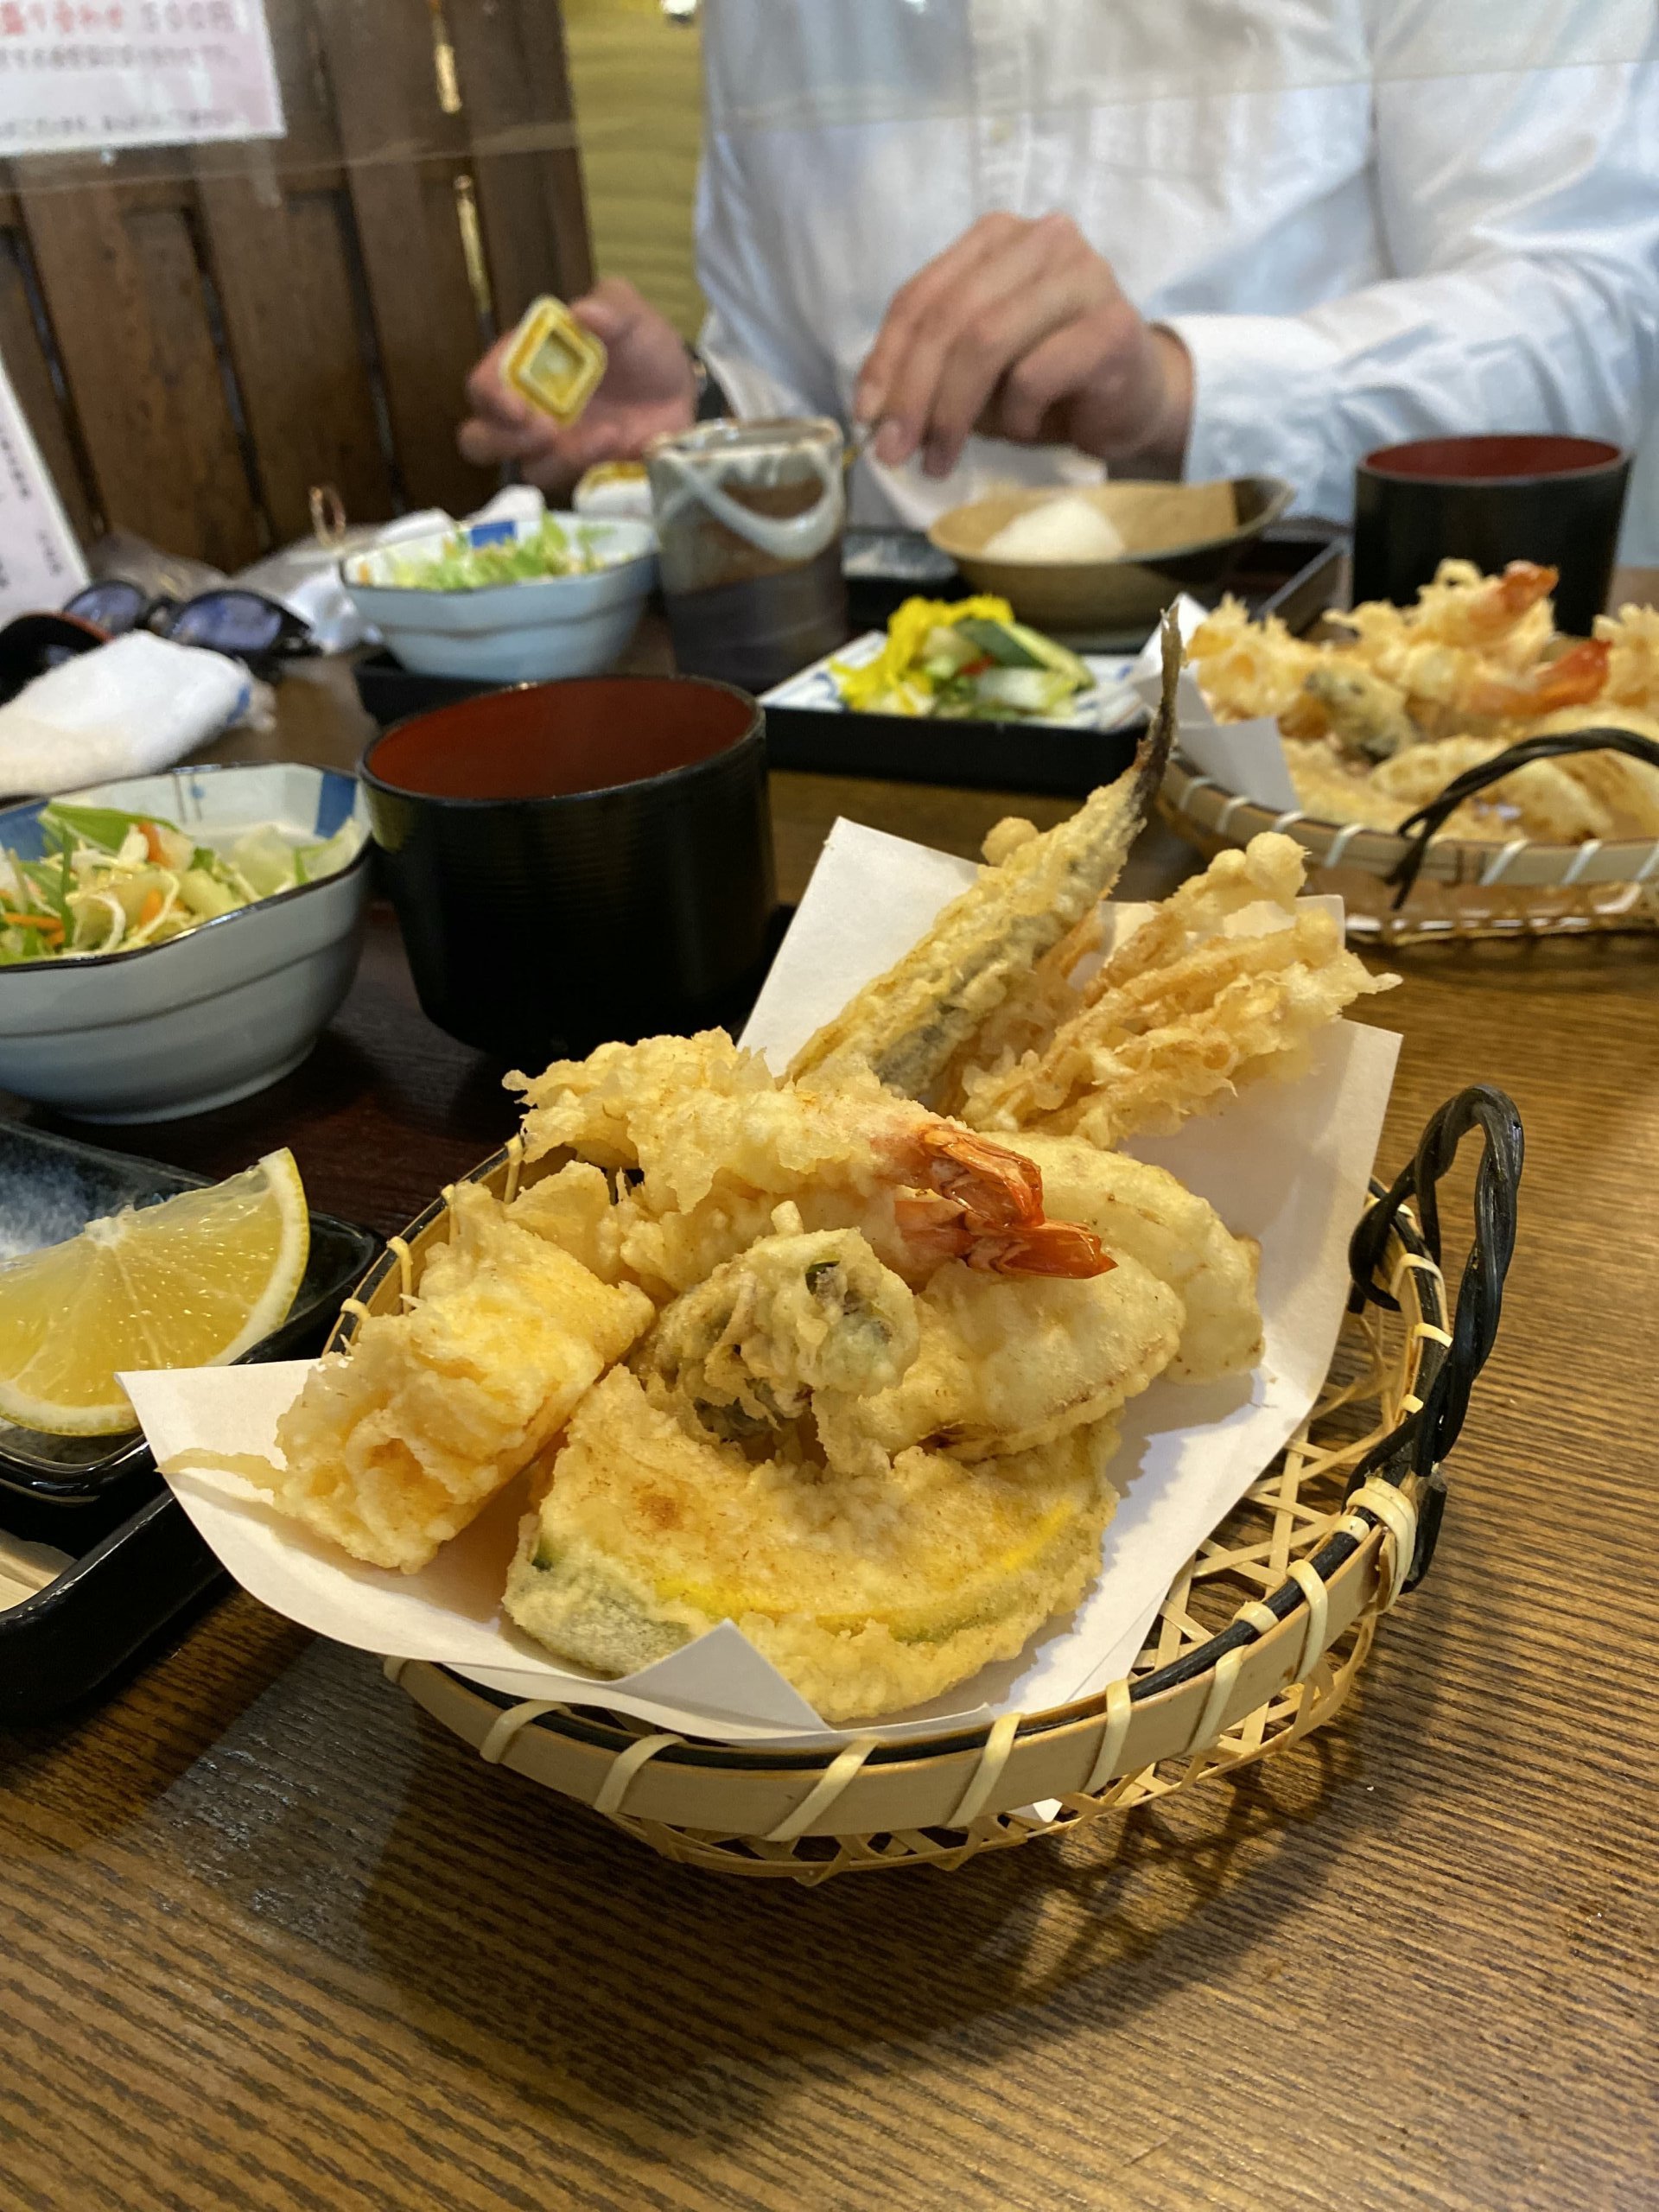 お昼の天ぷら定食